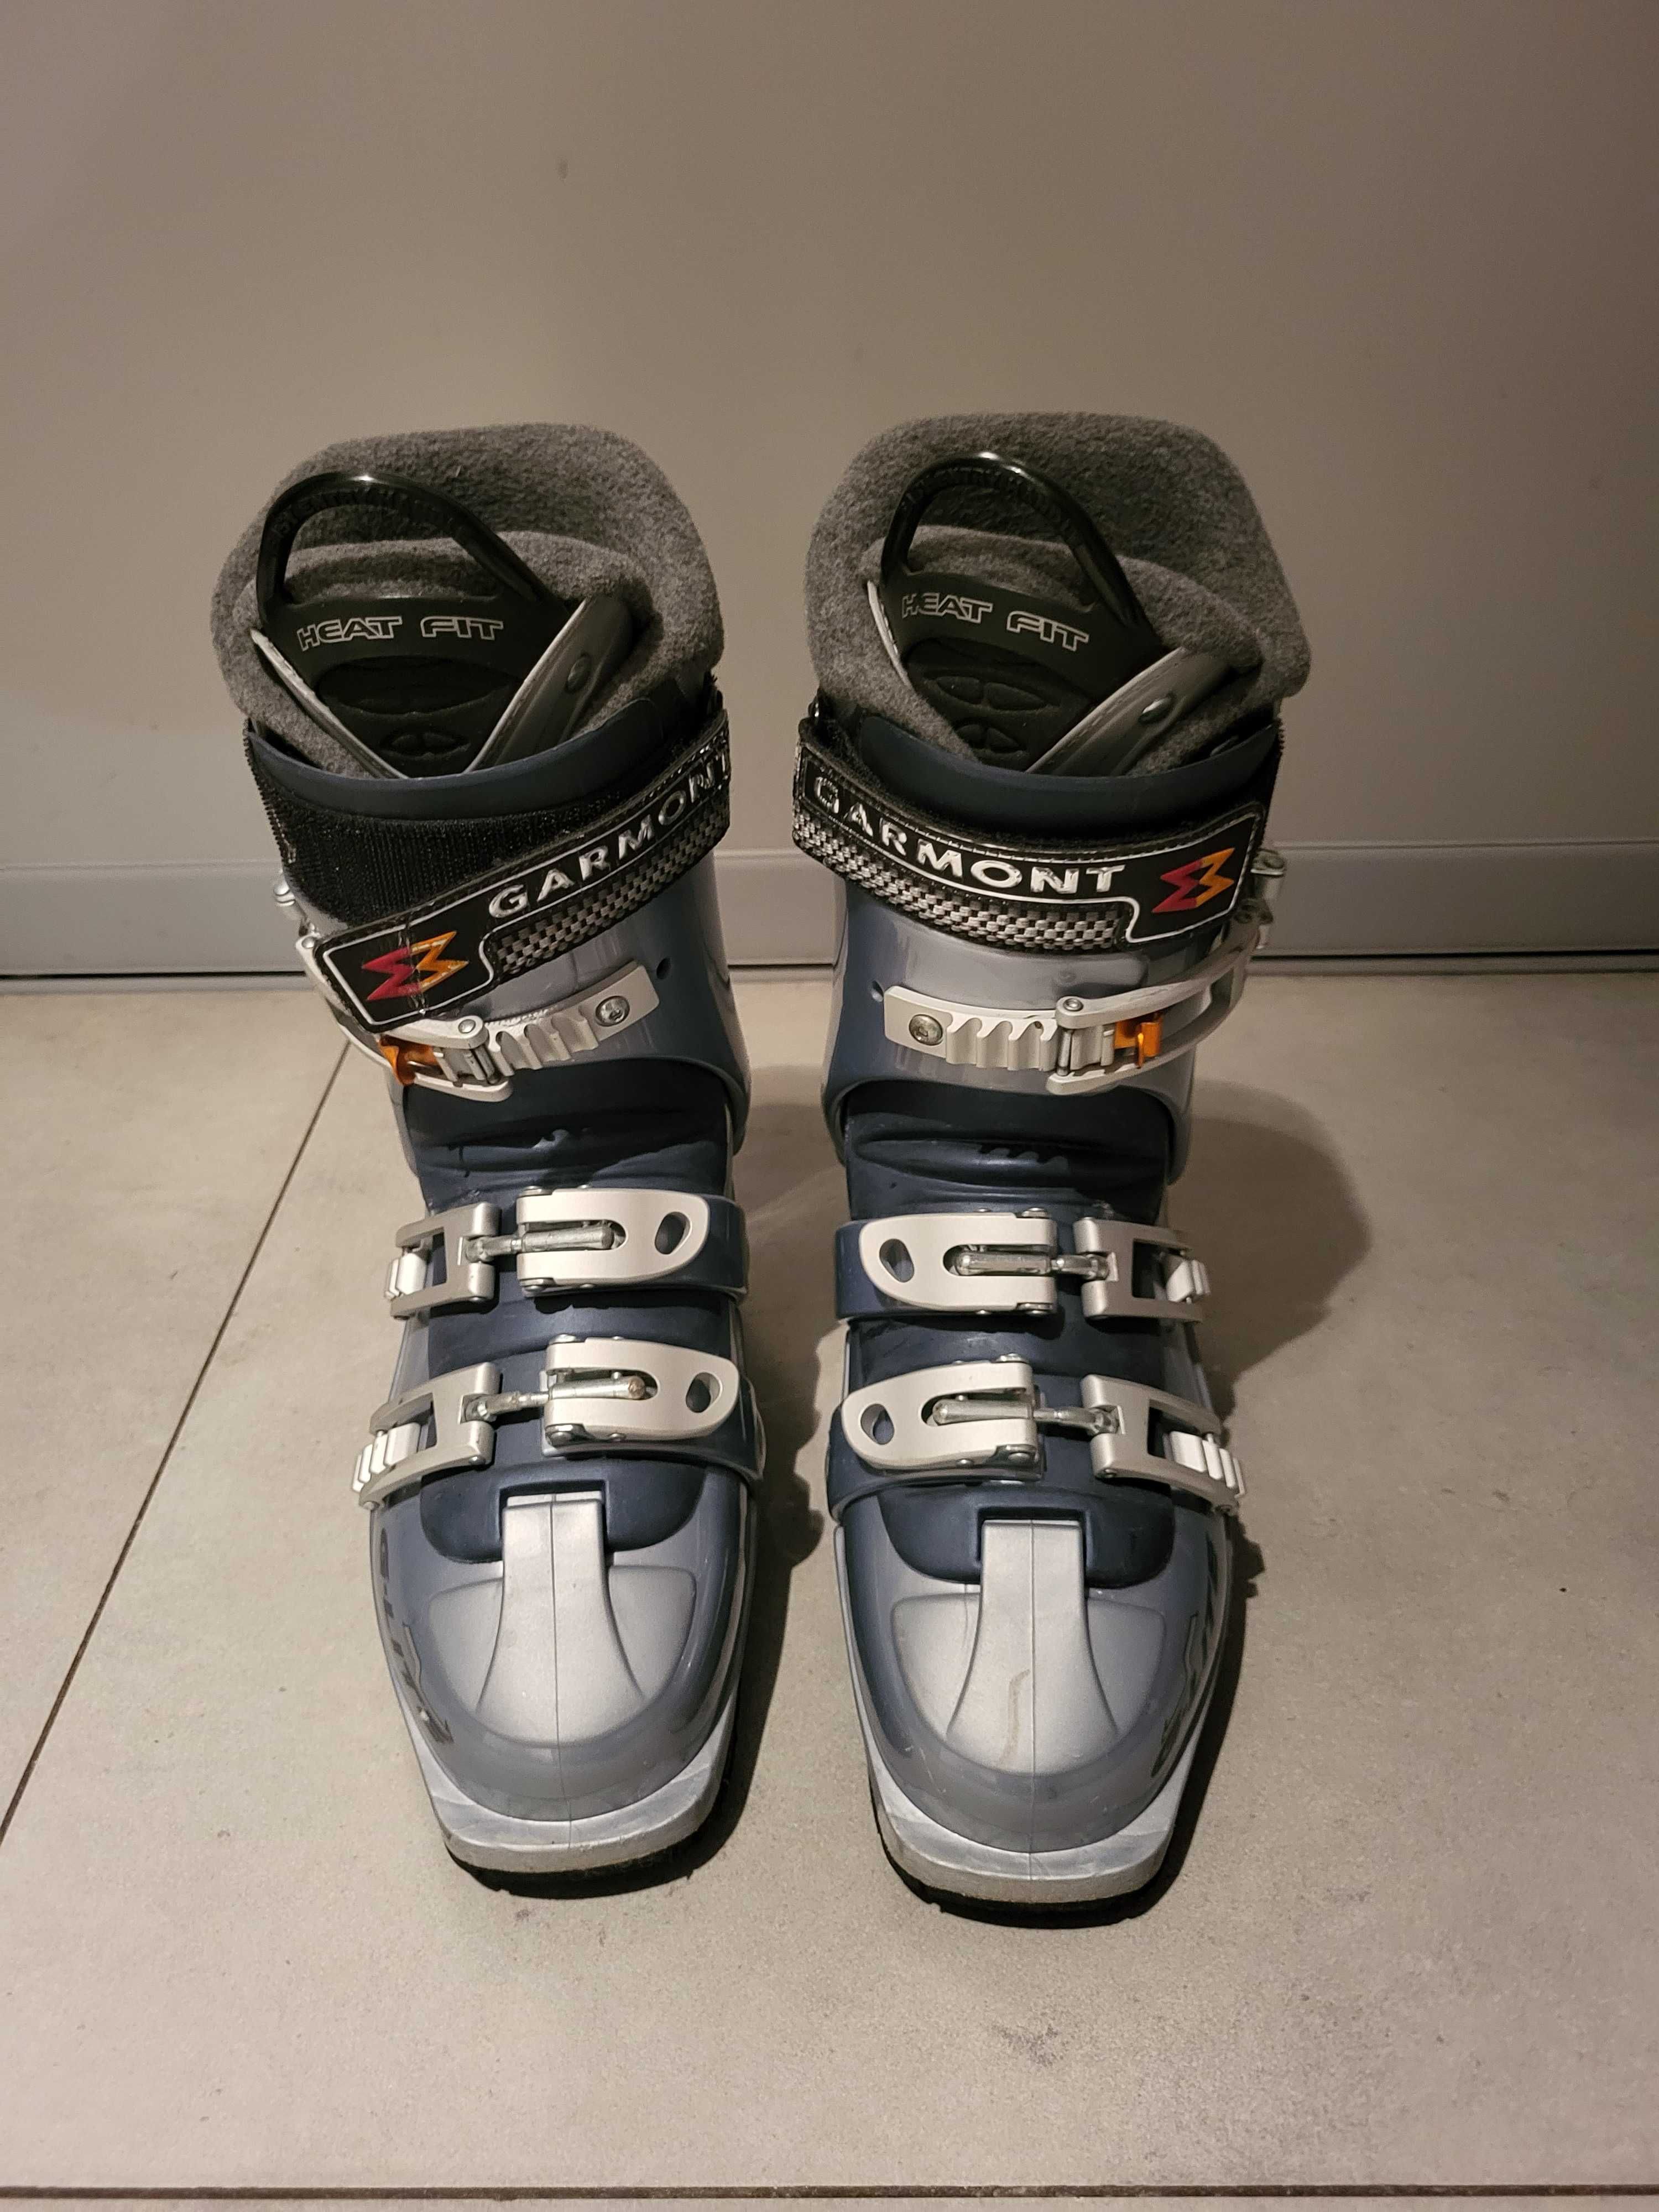 Buty skitourowe damskie Garmont G-Lite r. 38